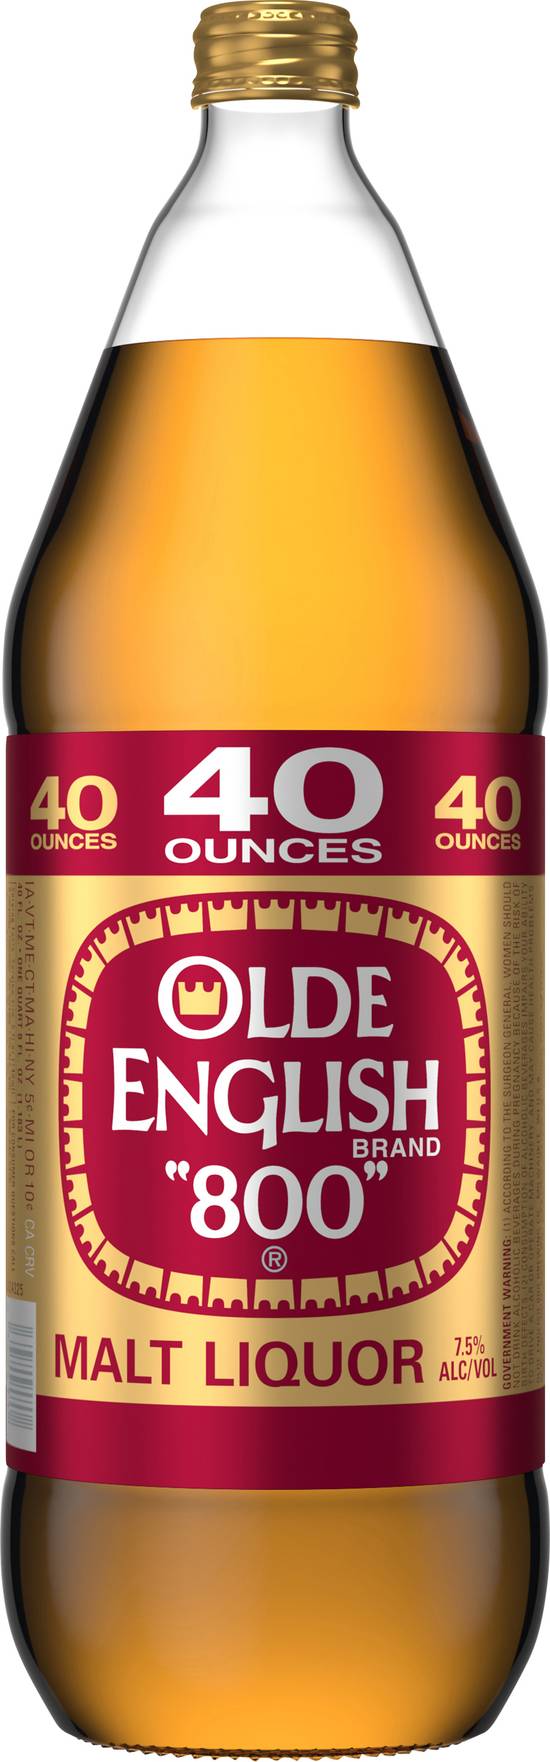 Olde English 800 Malt Liquor (40 fl oz)